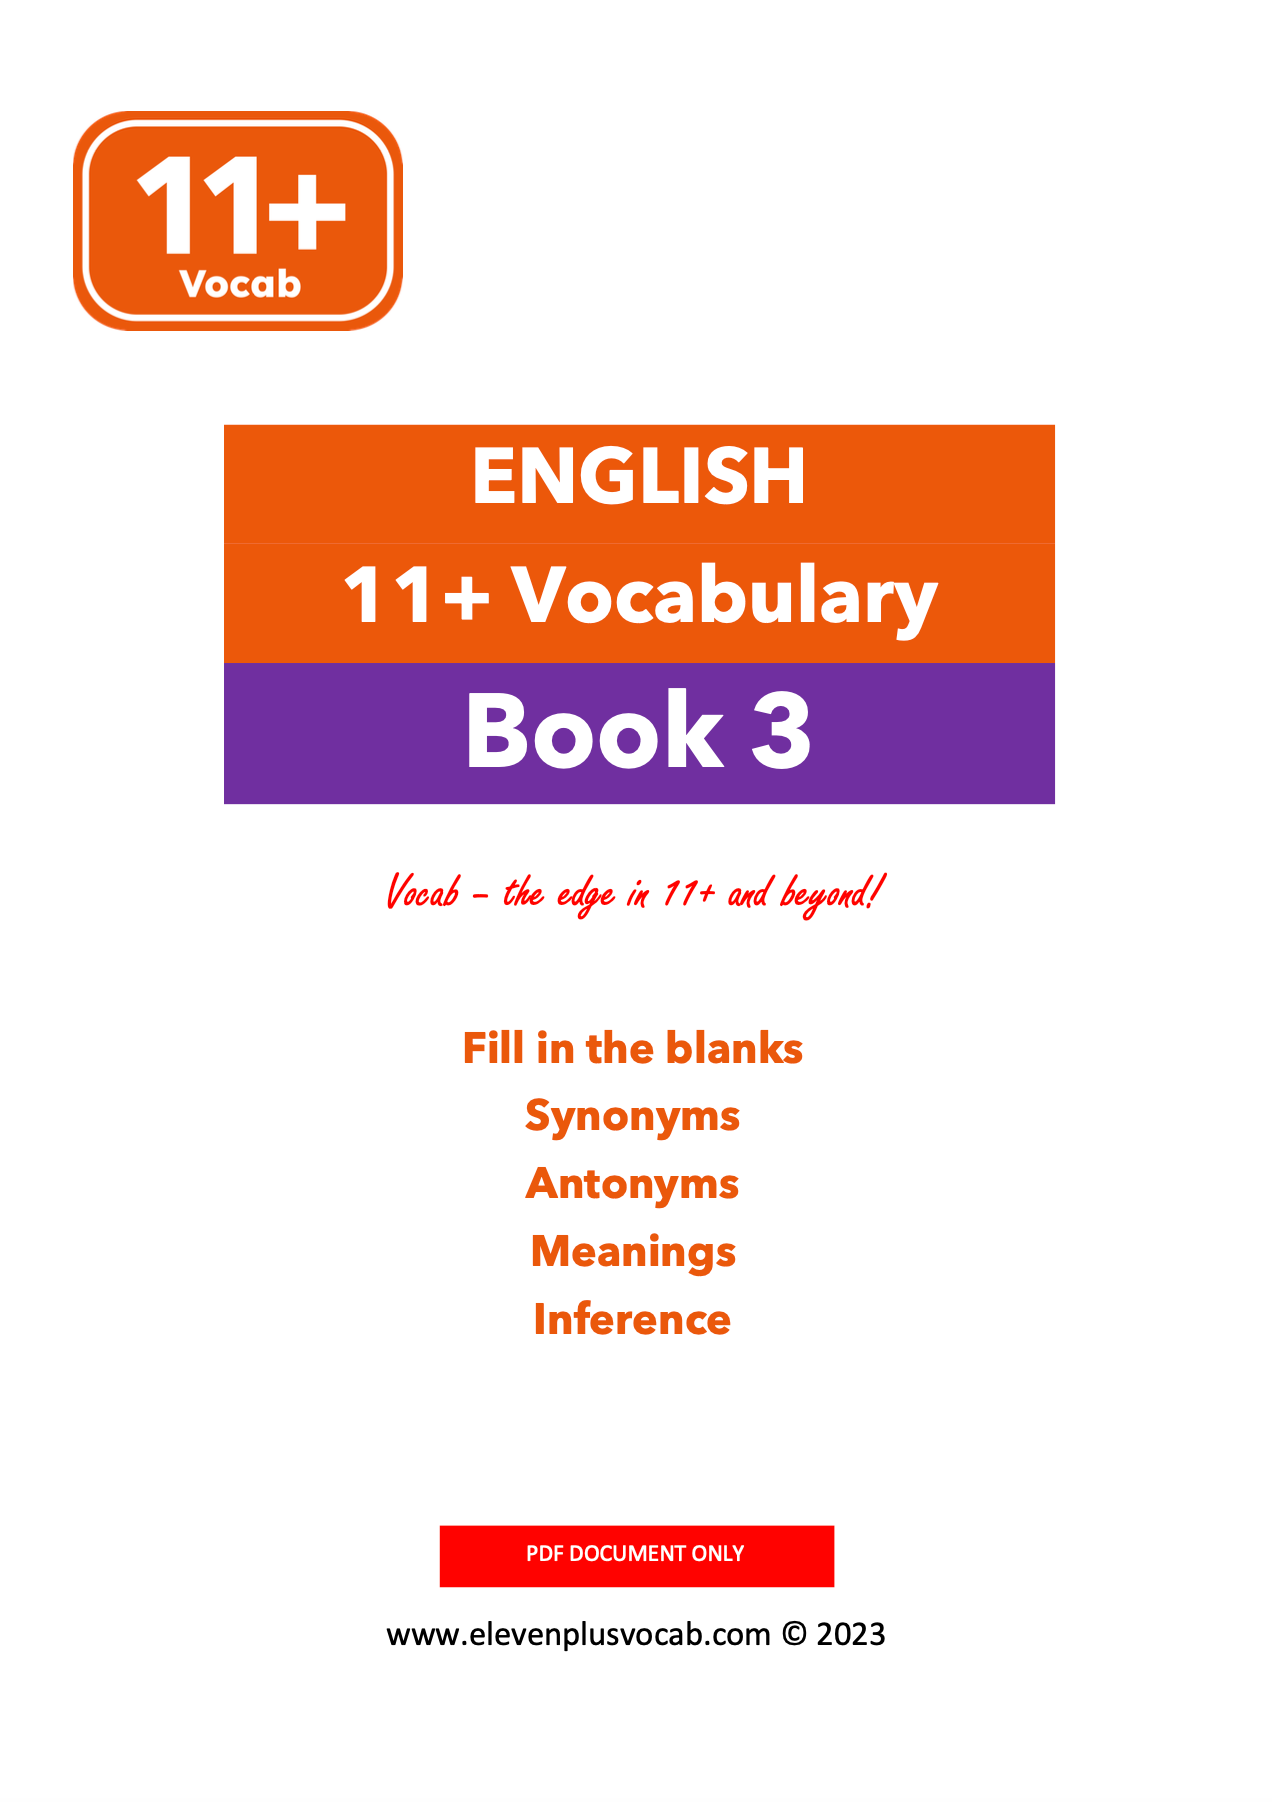 11+ English Vocab - PDF Book 3